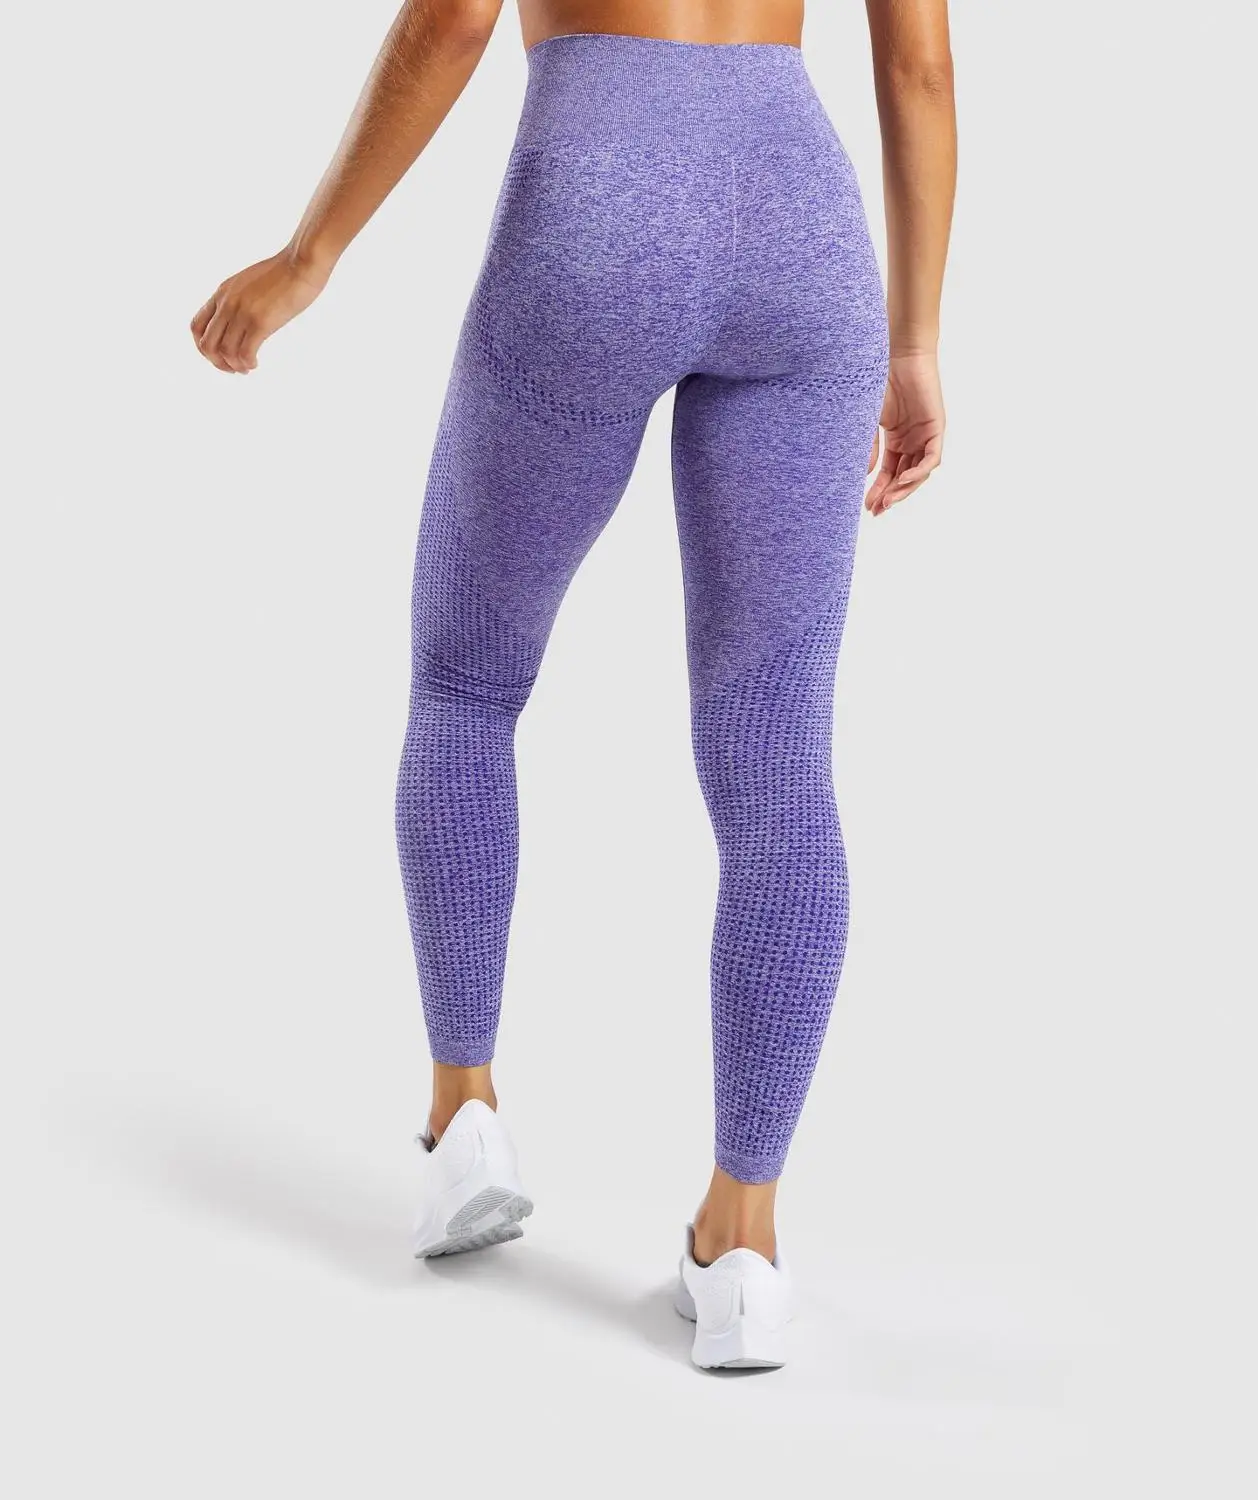 Высокая талия Бесшовные Леггинсы Спорт Фитнес Йога Брюки Спортивная одежда для женщин тренажерный зал - Цвет: purple Legging